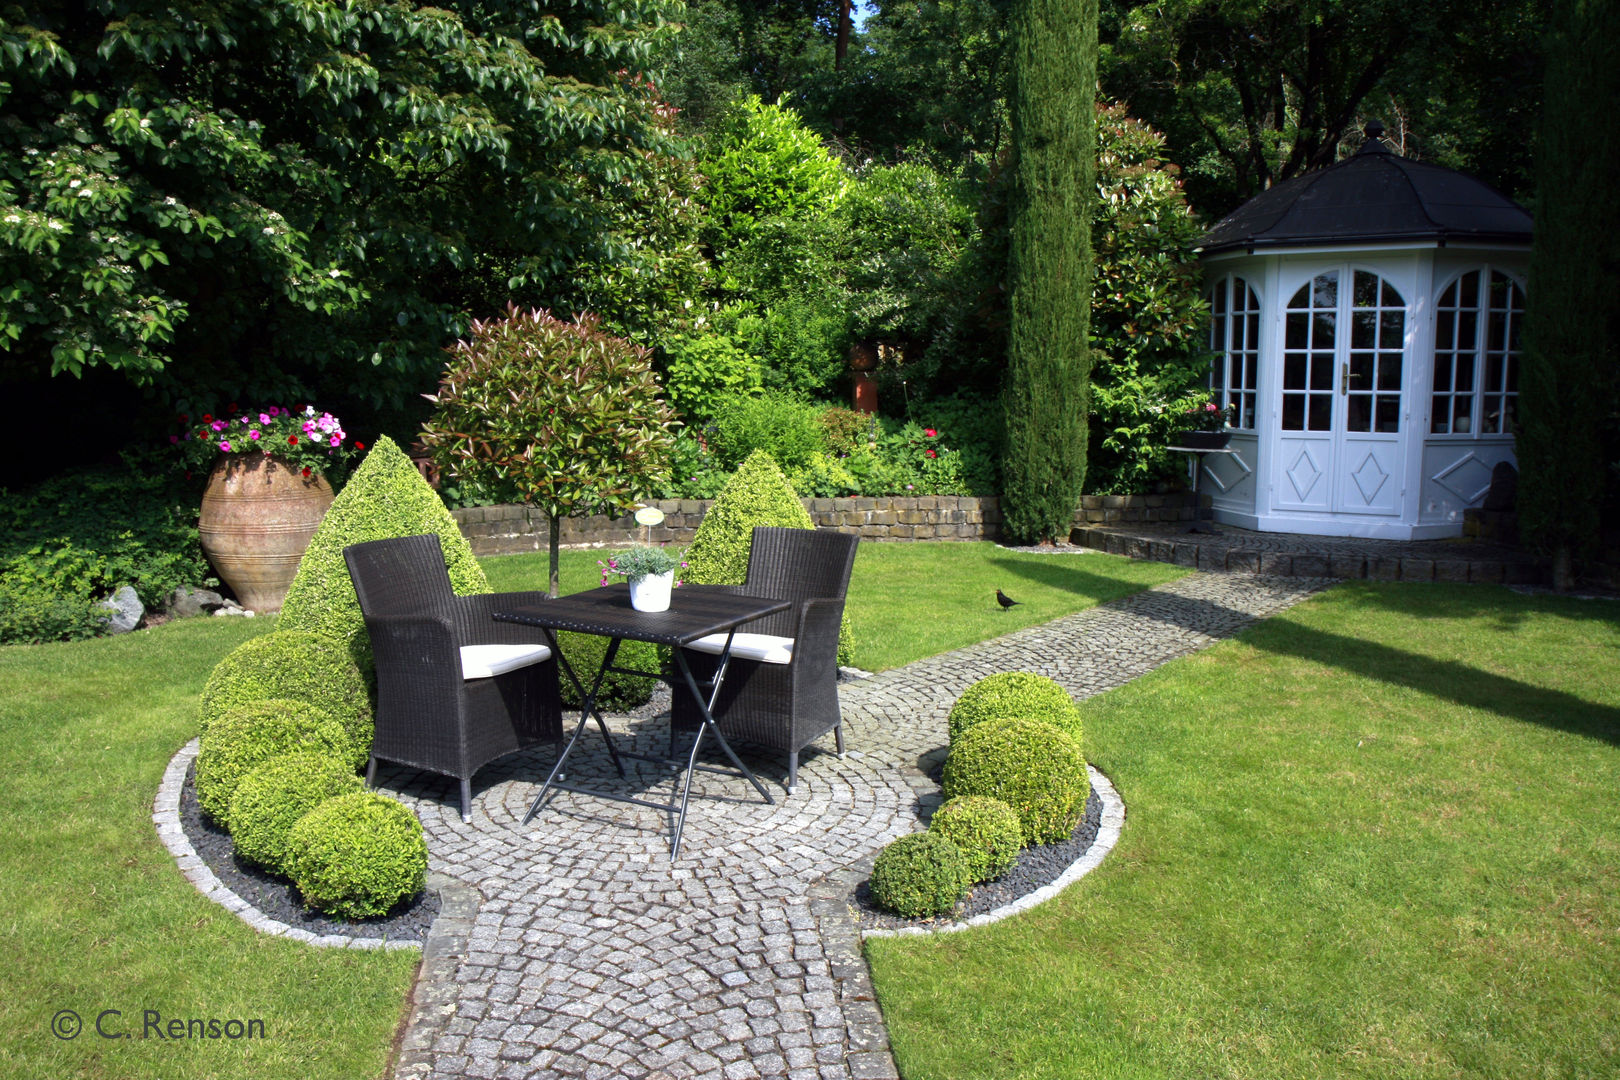 Garten mit Bachlauf, dirlenbach - garten mit stil dirlenbach - garten mit stil 컨트리스타일 정원